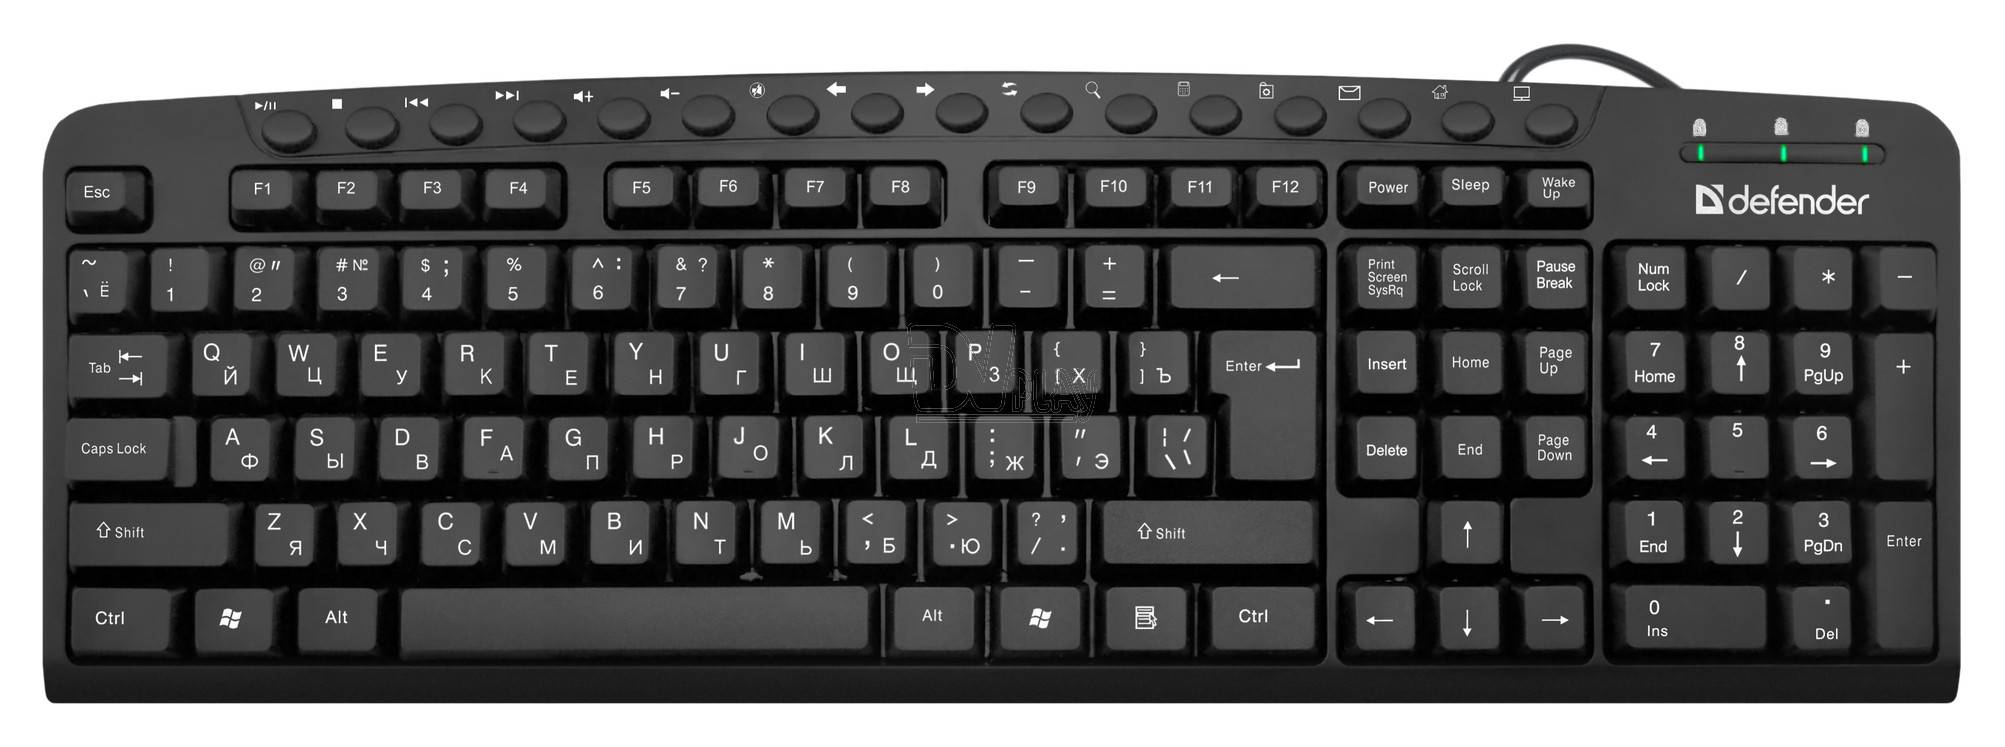 Defender Проводная клавиатура Focus HB-470 RU,черный, мультимедиа, USB.